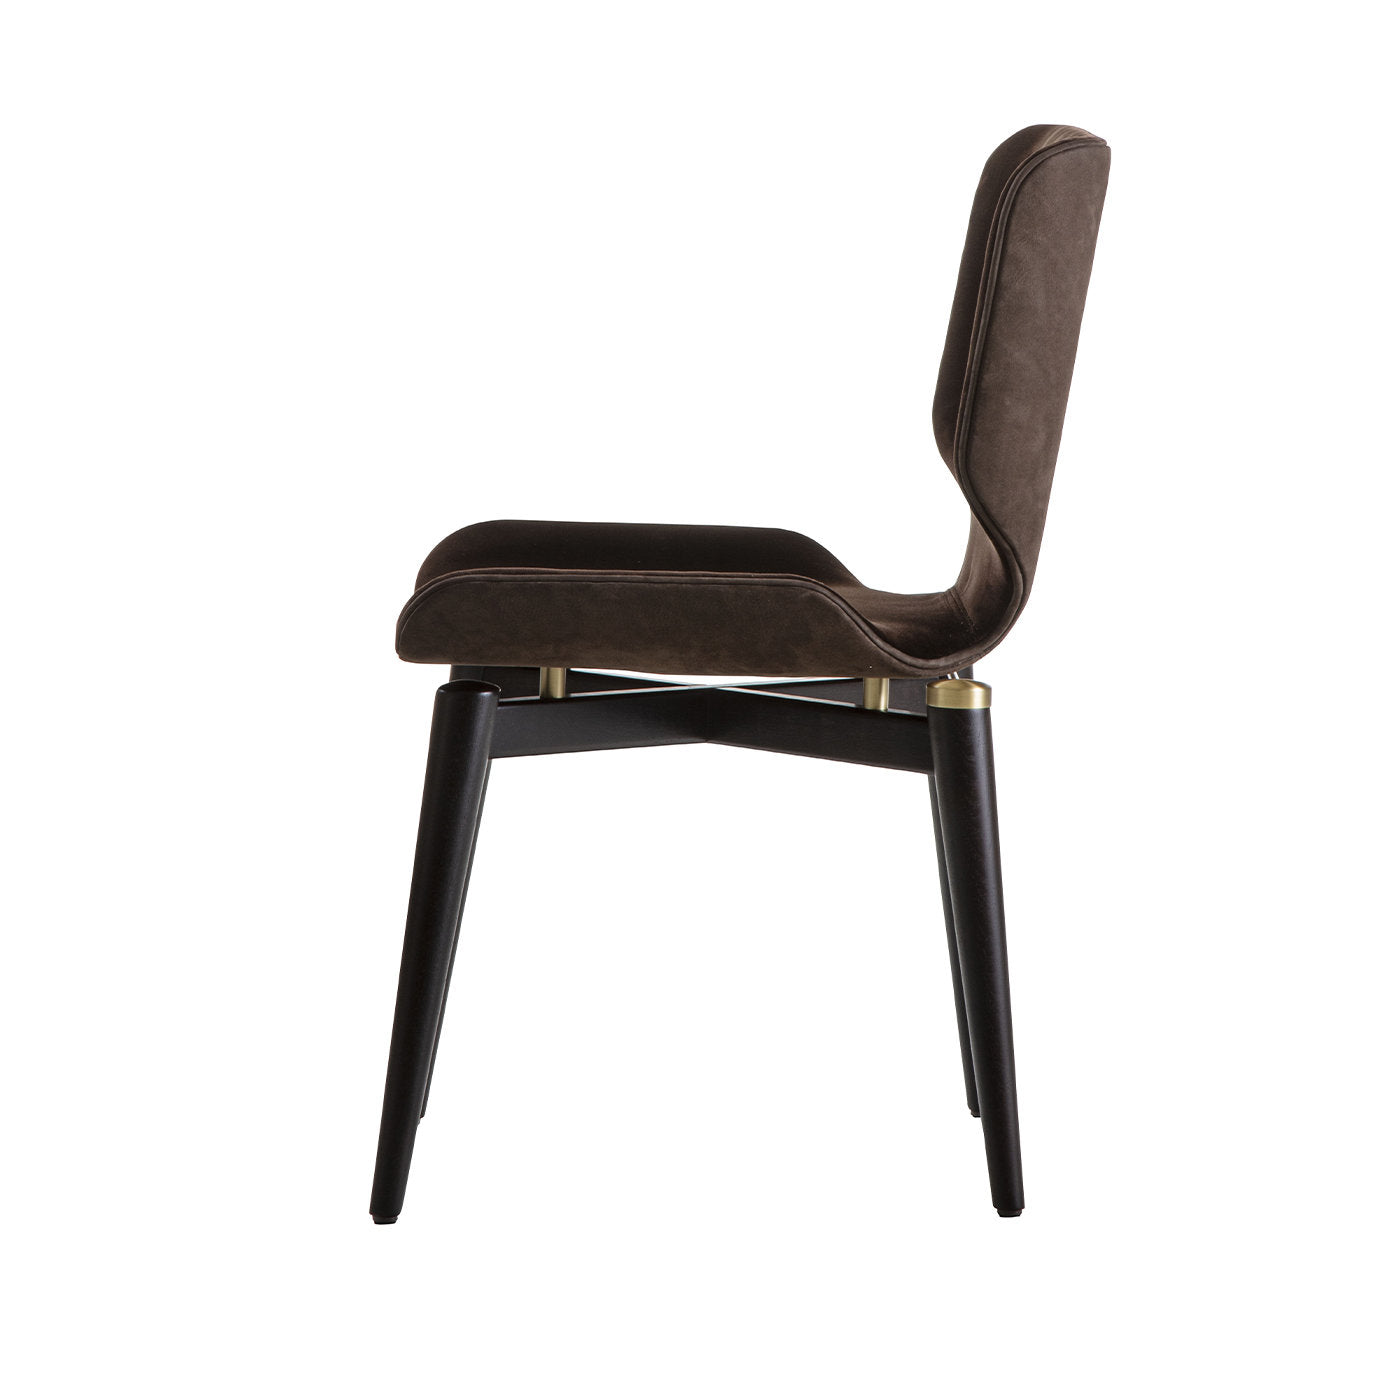 Egle Brown Chair - Alternative view 2